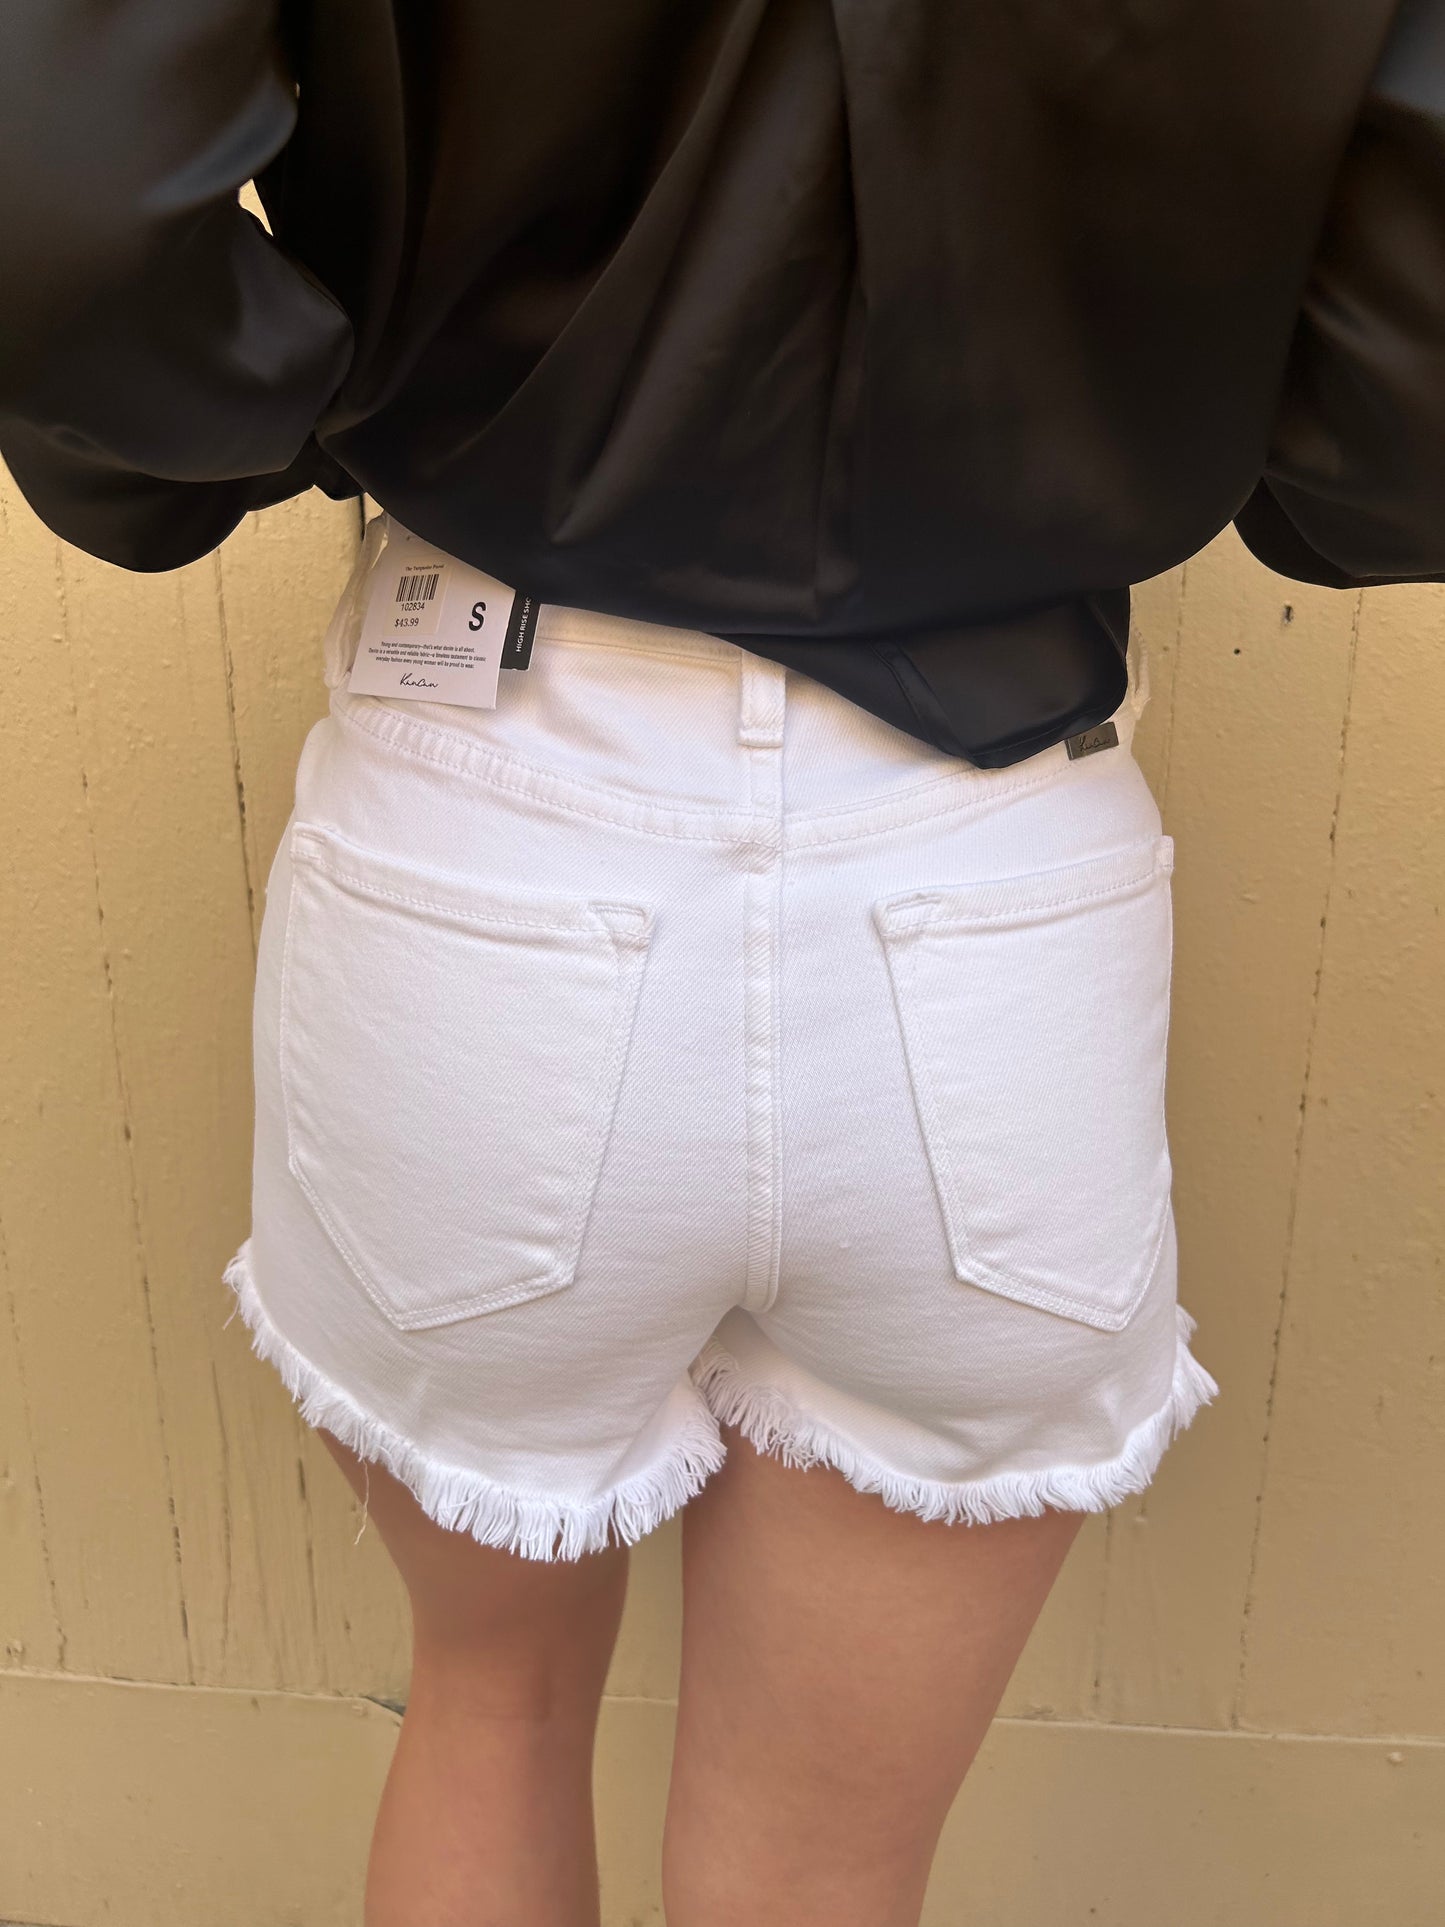 The KanCan White Denim Shorts